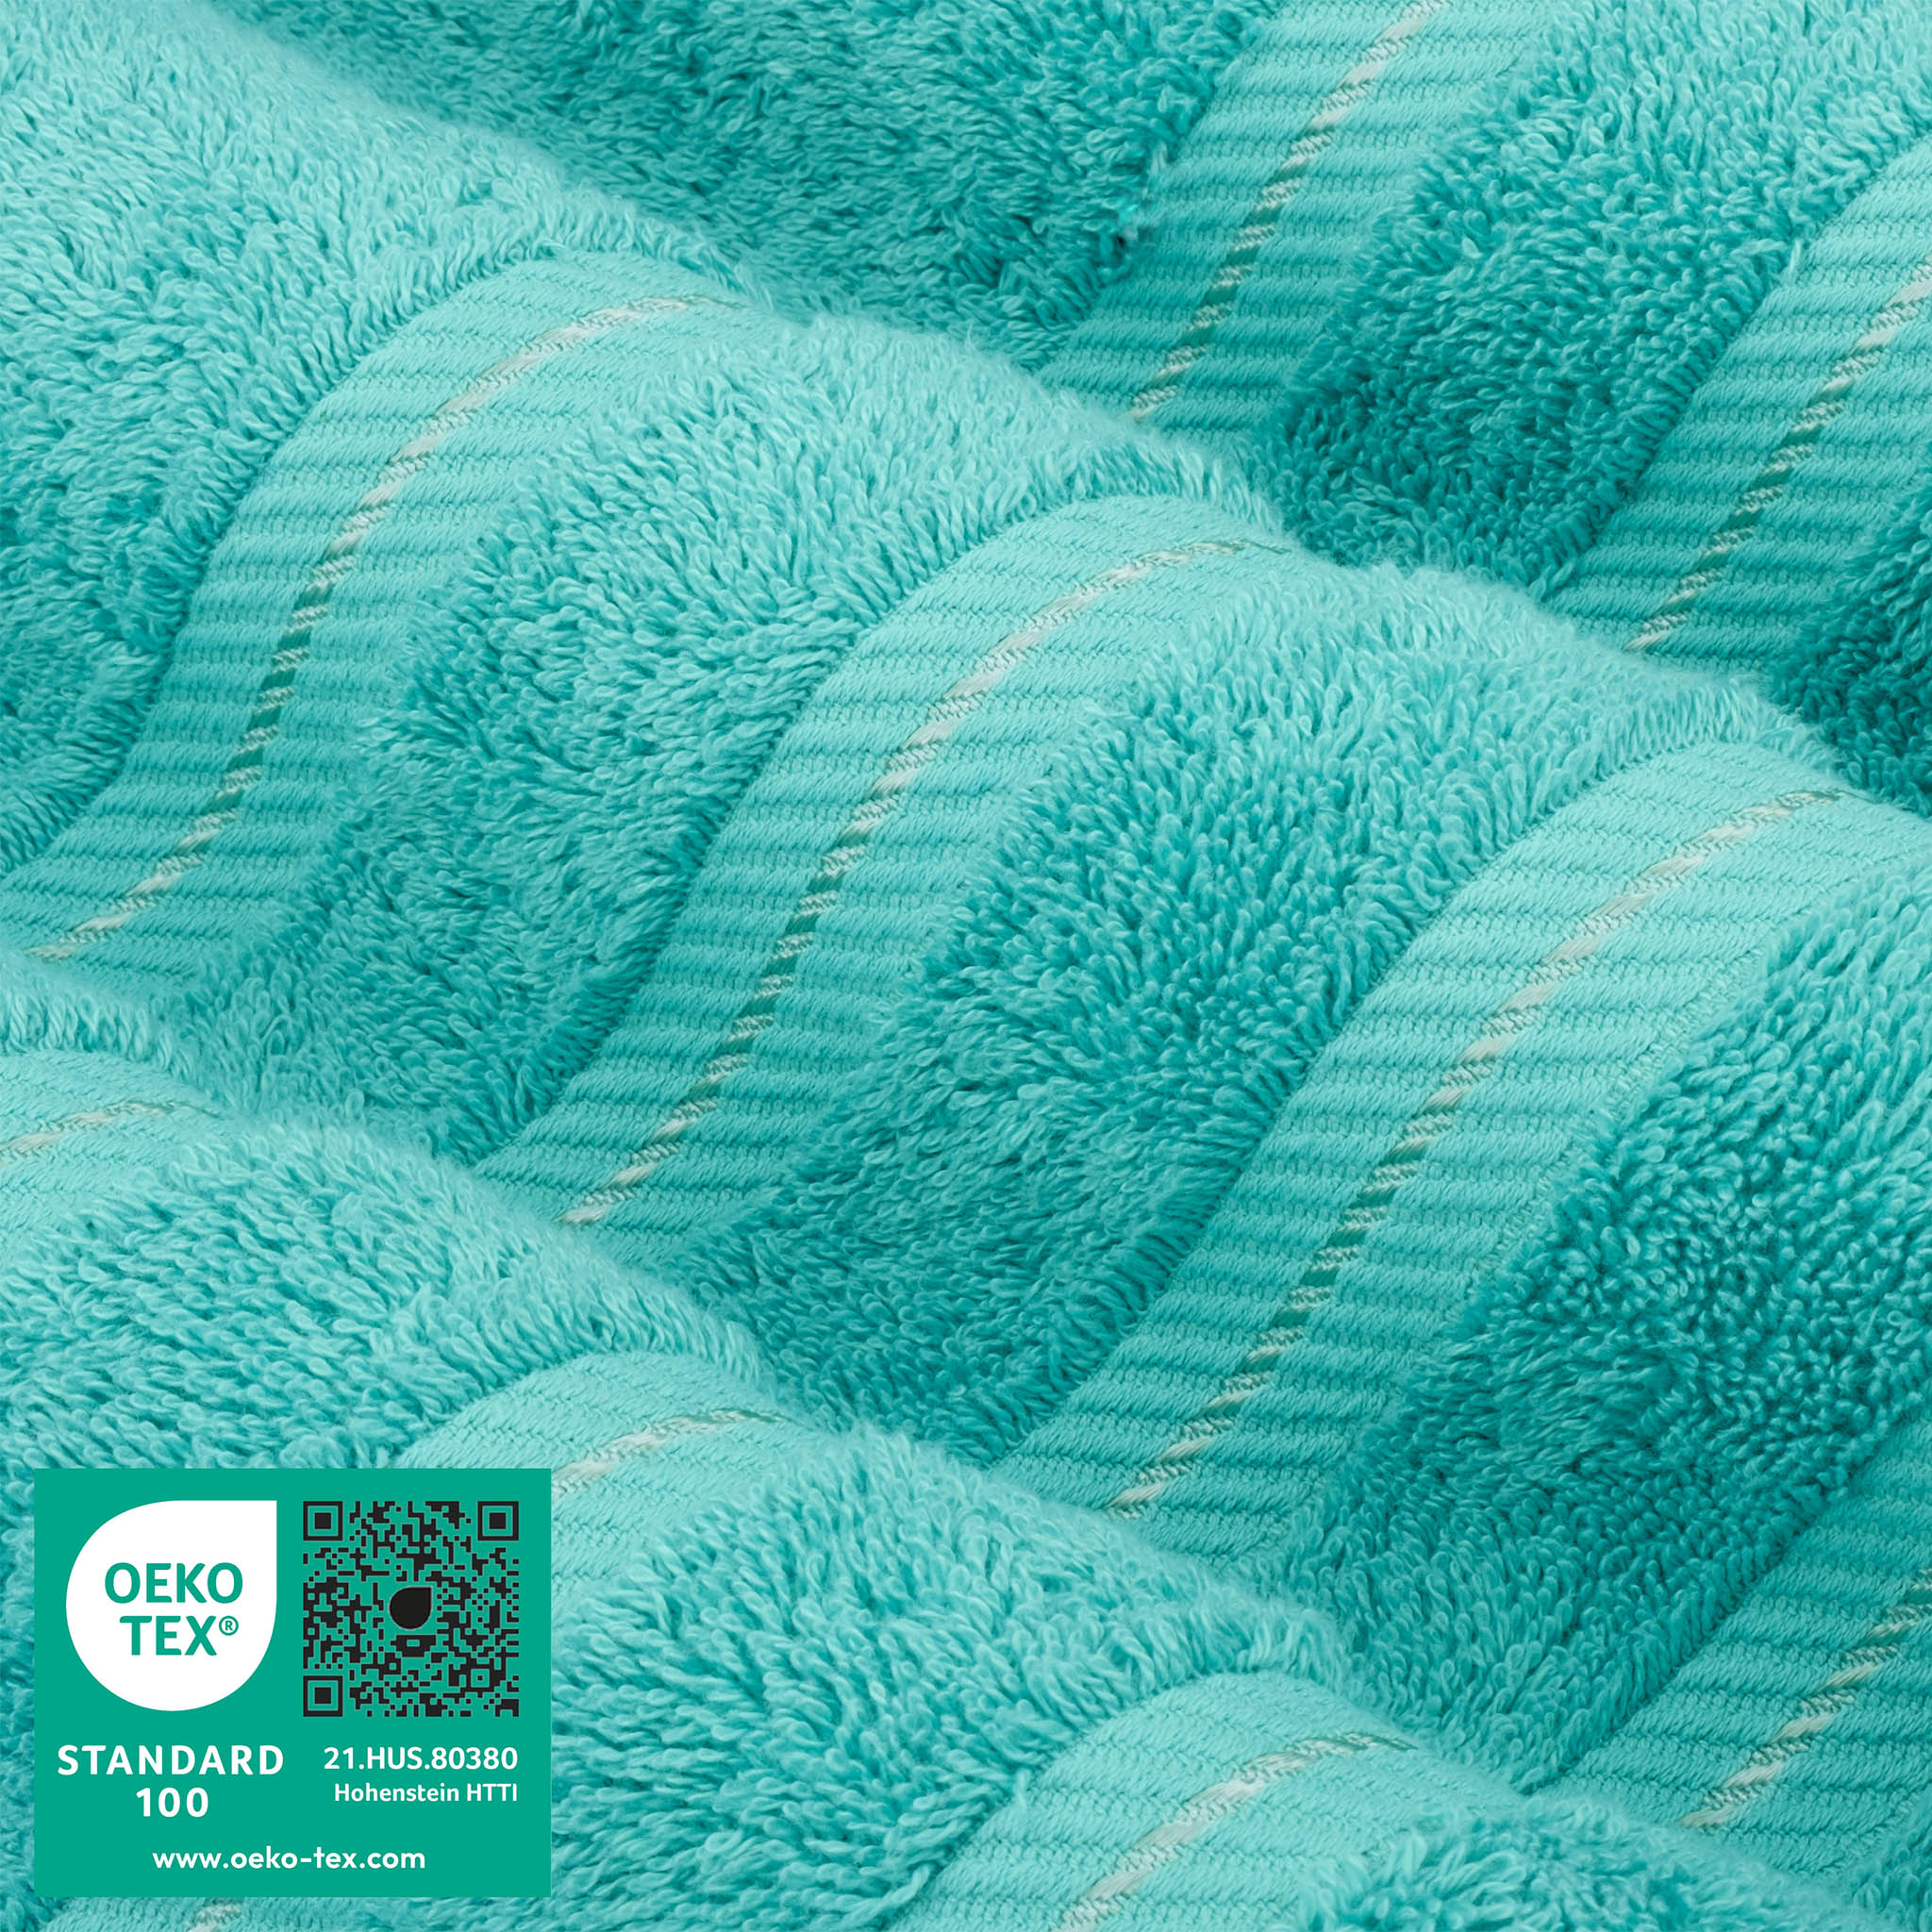 American Soft Linen 100% Turkish Cotton 6 Piece Towel Set Wholesale turquoise-blue-3